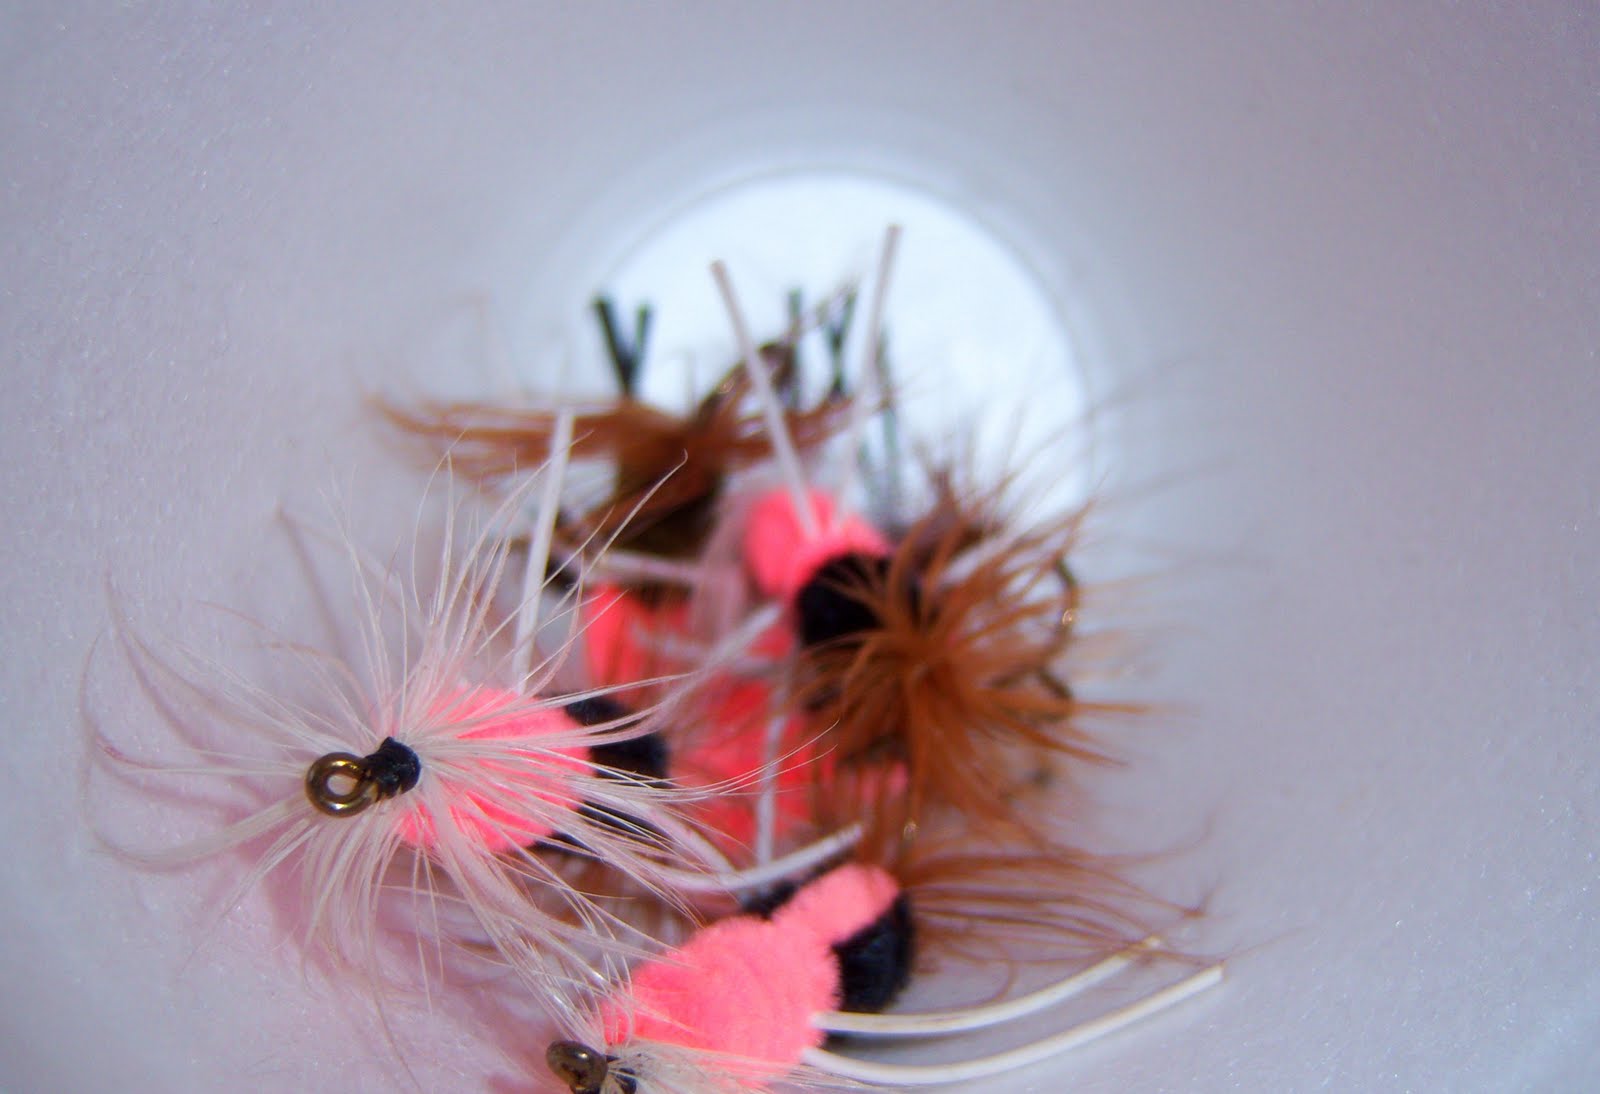 pink flies